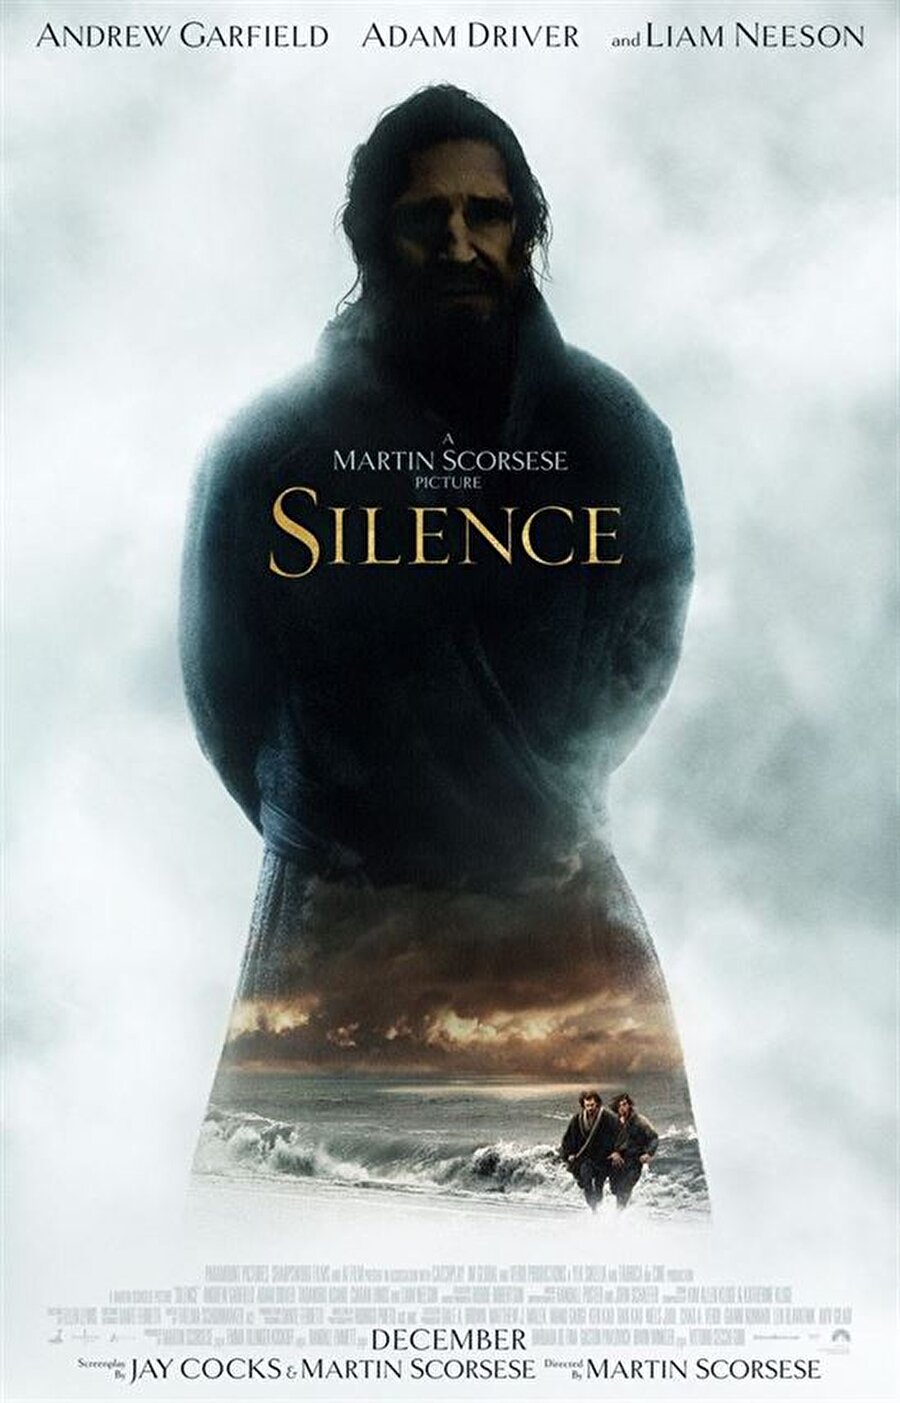 Silence
Konusu: Martin Scorsese'nin senaryosunu Jay Cocks ile birlikte kaleme aldığı "Silence", iki Hristiyan misyonerin, kayıp mürşitlerini bulma amacıyla gittikleri Japonya'da yaşadıklarını odağına alıyor. Scorsese'nin aynı zamanda yönettiği filmde; Liam Neeson, Andrew Garfield, Adam Driver, Ciaran Hinds, Tadanobu Asano, Ryo Kase, Shinya Tsukamoto ve Nana Komatsu gibi isimler rol aldı. Dram türündeki film, Japon yazar Shusaku Endo'nun 1966'da yazdığı aynı adlı romandan sinemaya uyarlandı.